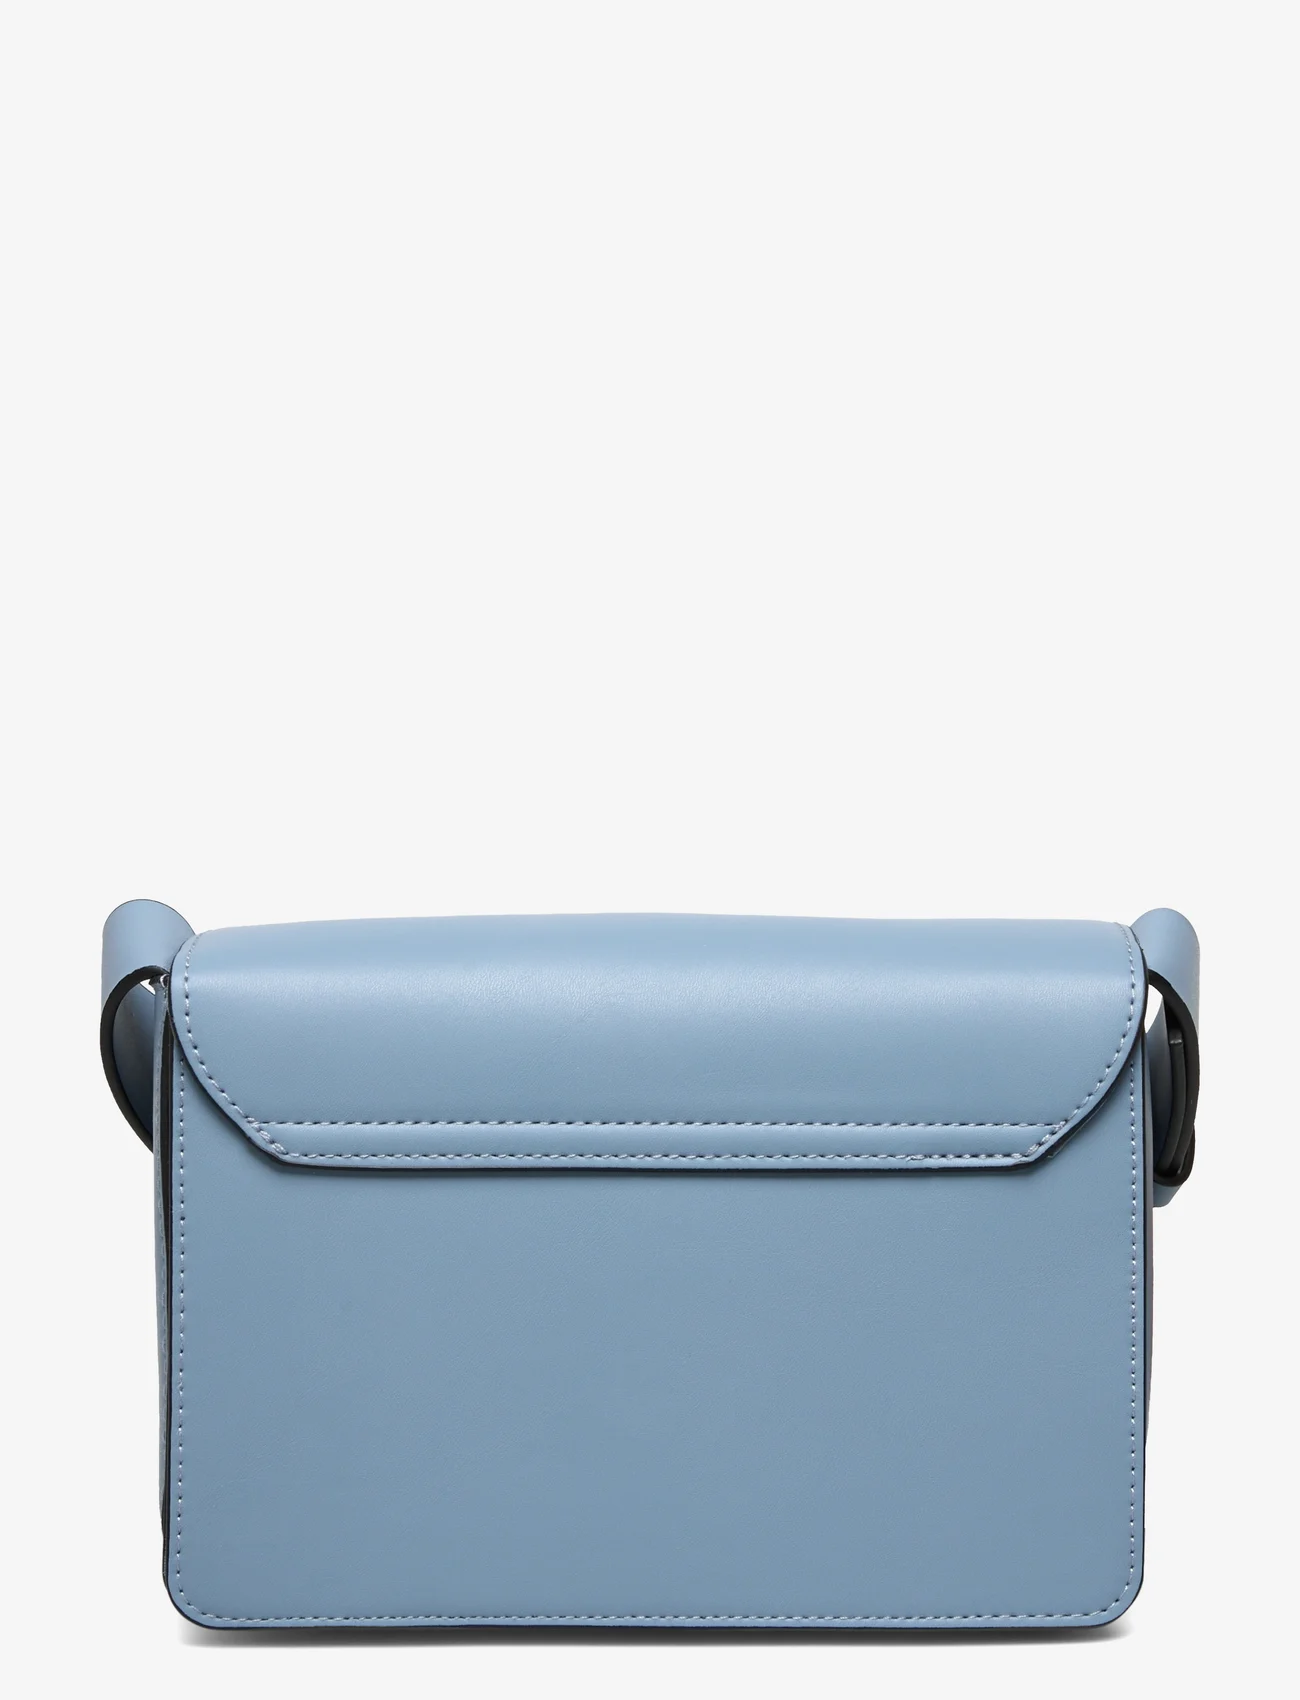 Lindex - Bag Clean look - madalaimad hinnad - light dusty blue - 1